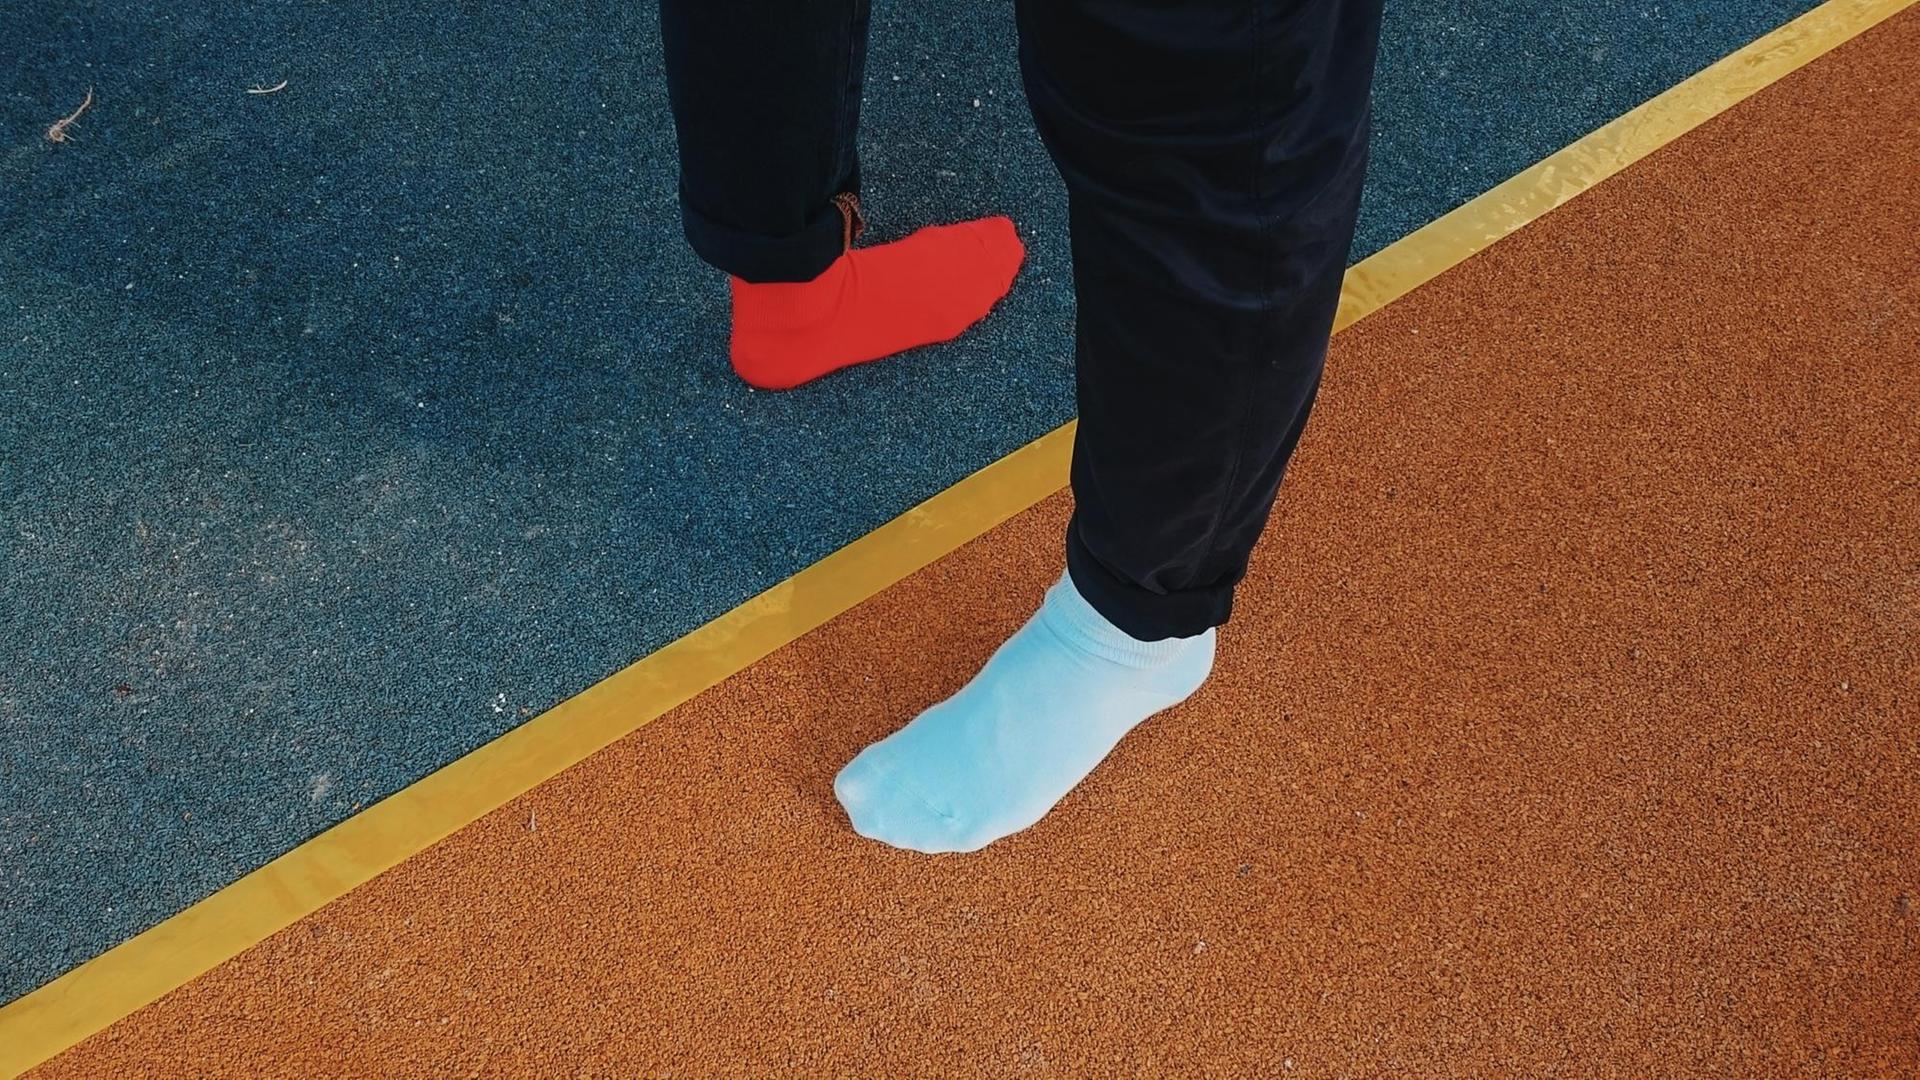 Auf einer Sportlaufbahn steh ein Fuß in einem blauen Socken und ein Fuß in einem orangenem Socken in unterschiedlichen Richtungen.